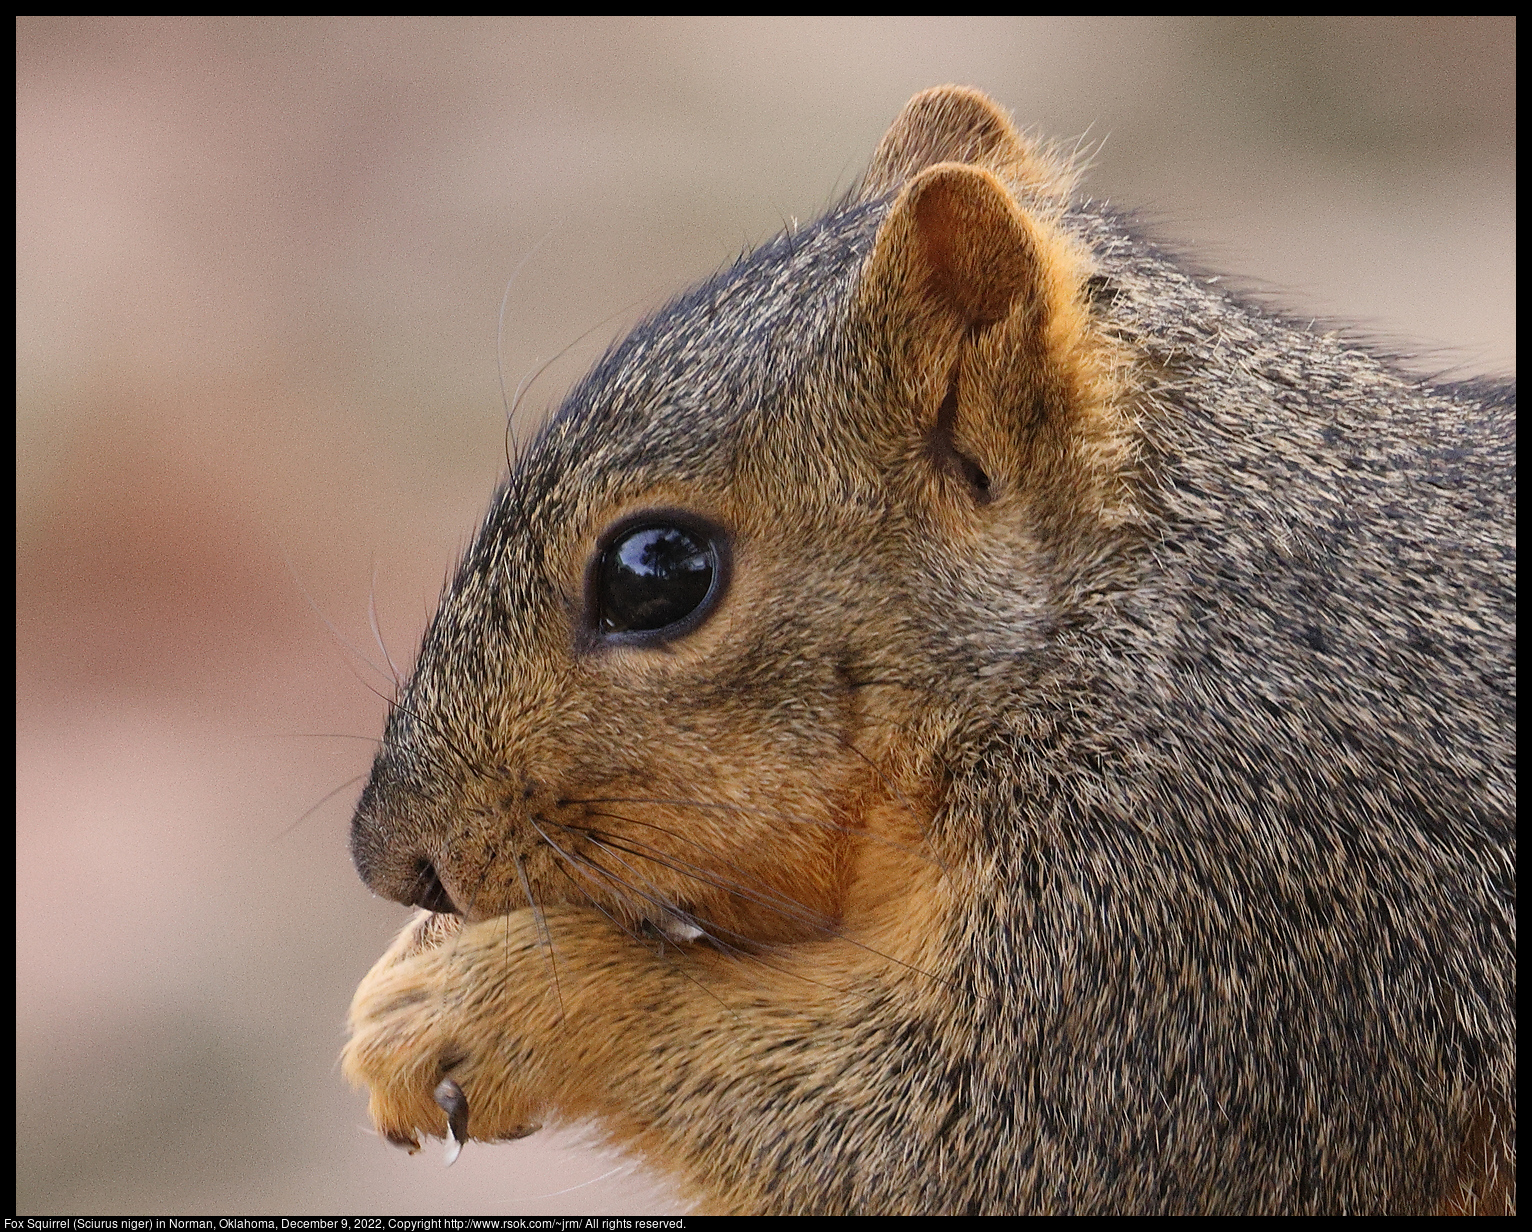 Fox Squirrel (Sciurus niger) in Norman, Oklahoma, December 9, 2022